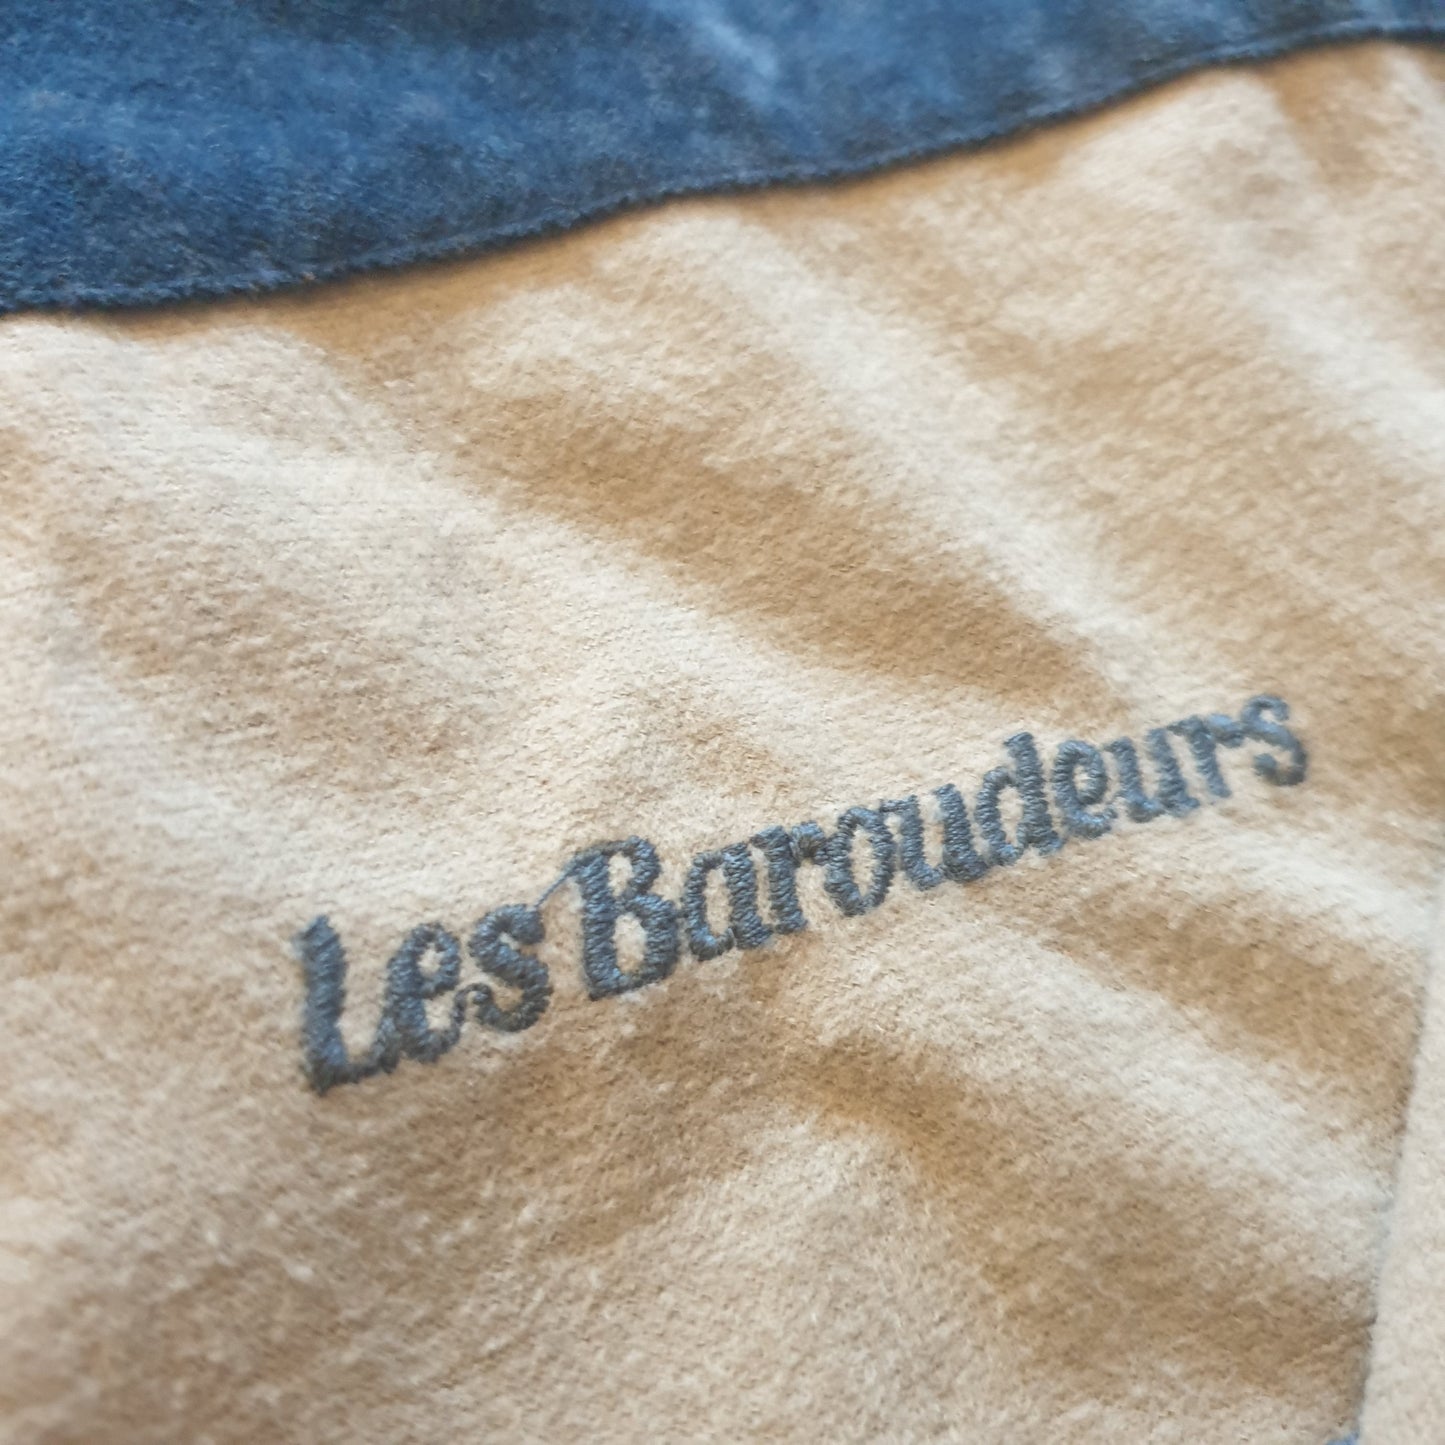 80's-90's Les Baroudeurs Light Jacket L